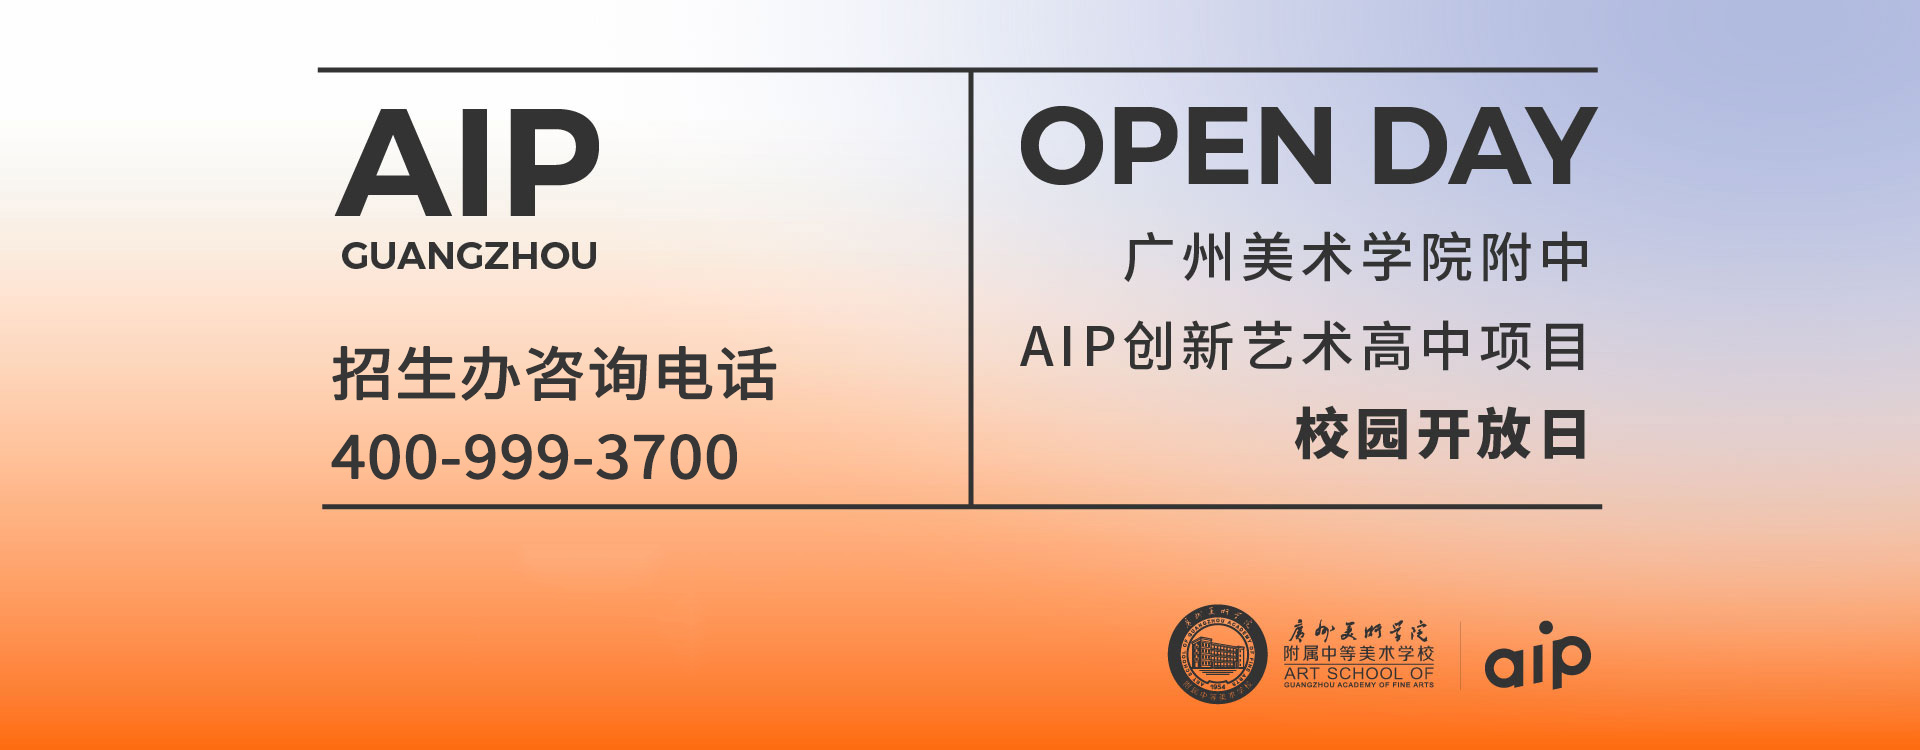 广州美术学院附中AIP校园开放日活动开启